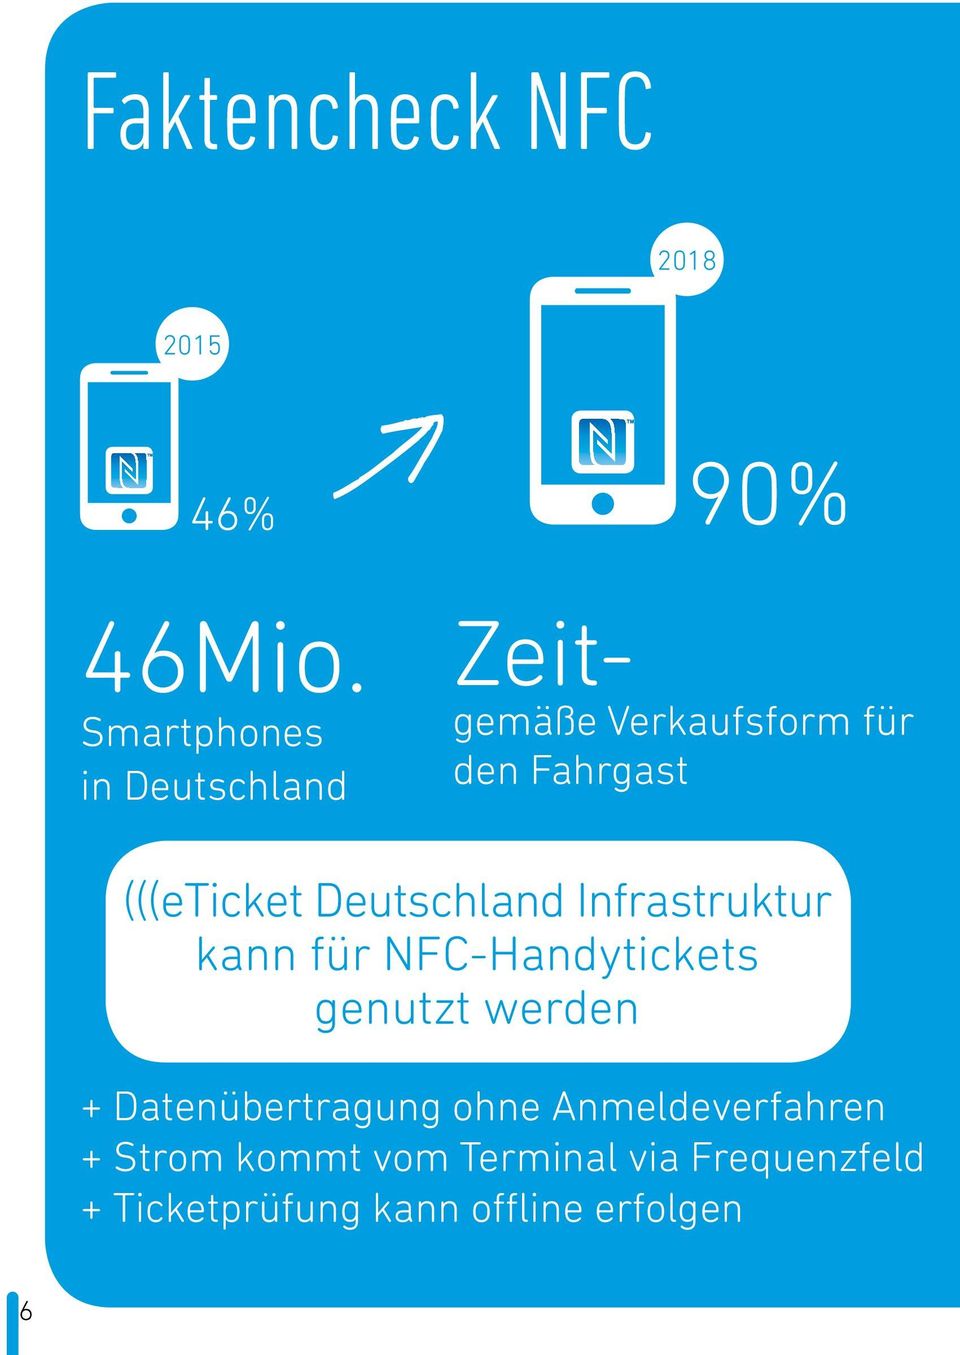 (((eticket Deutschland Infrastruktur kann für NFC-Handytickets genutzt werden